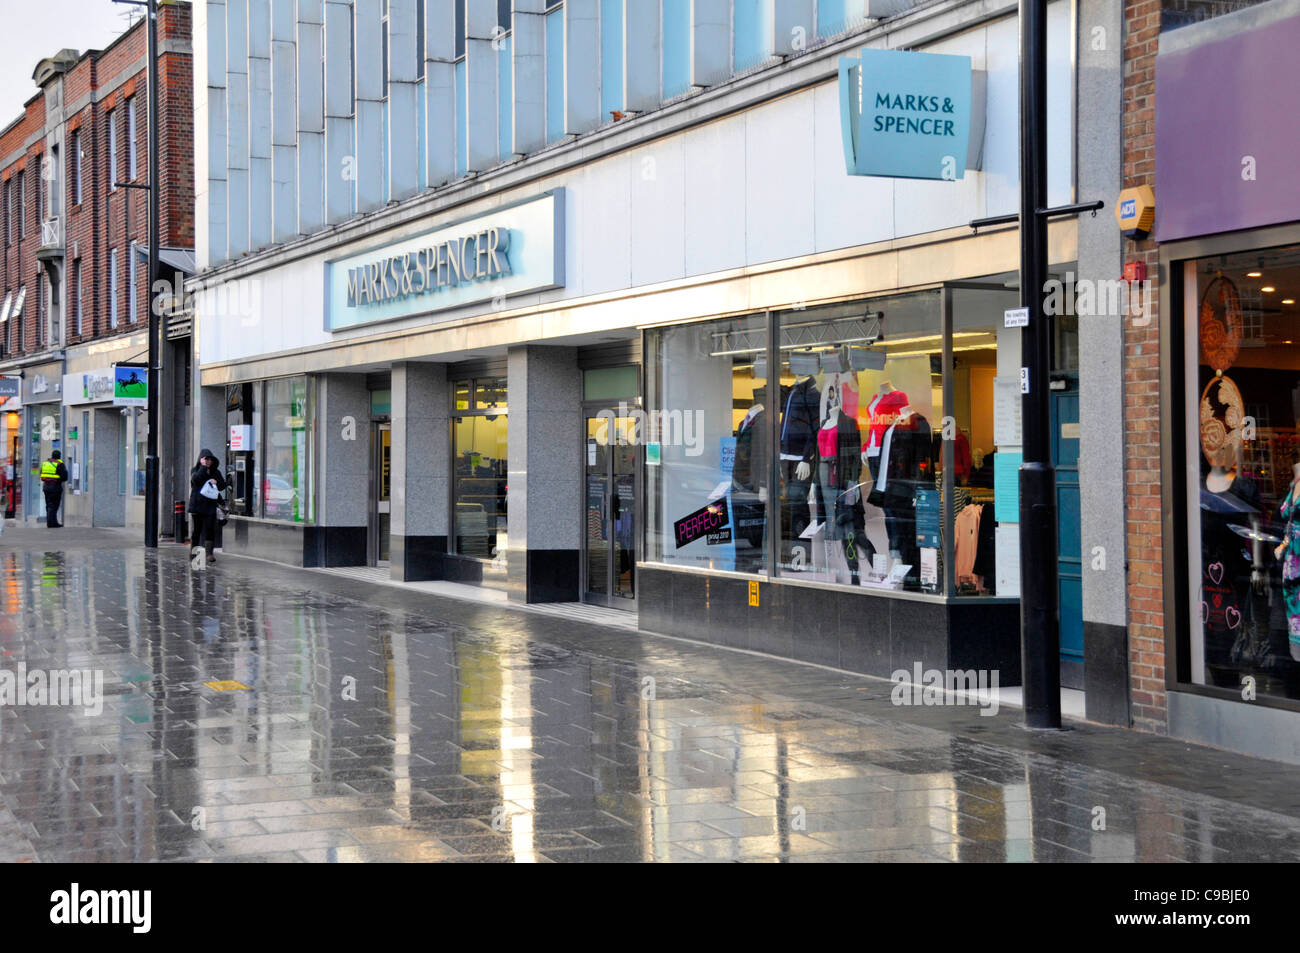 Marks & Spencer Shopping High Street Shop Schaufenster Reflexionen an einem regnerischen Januar Wintertag Essex England UK Stockfoto